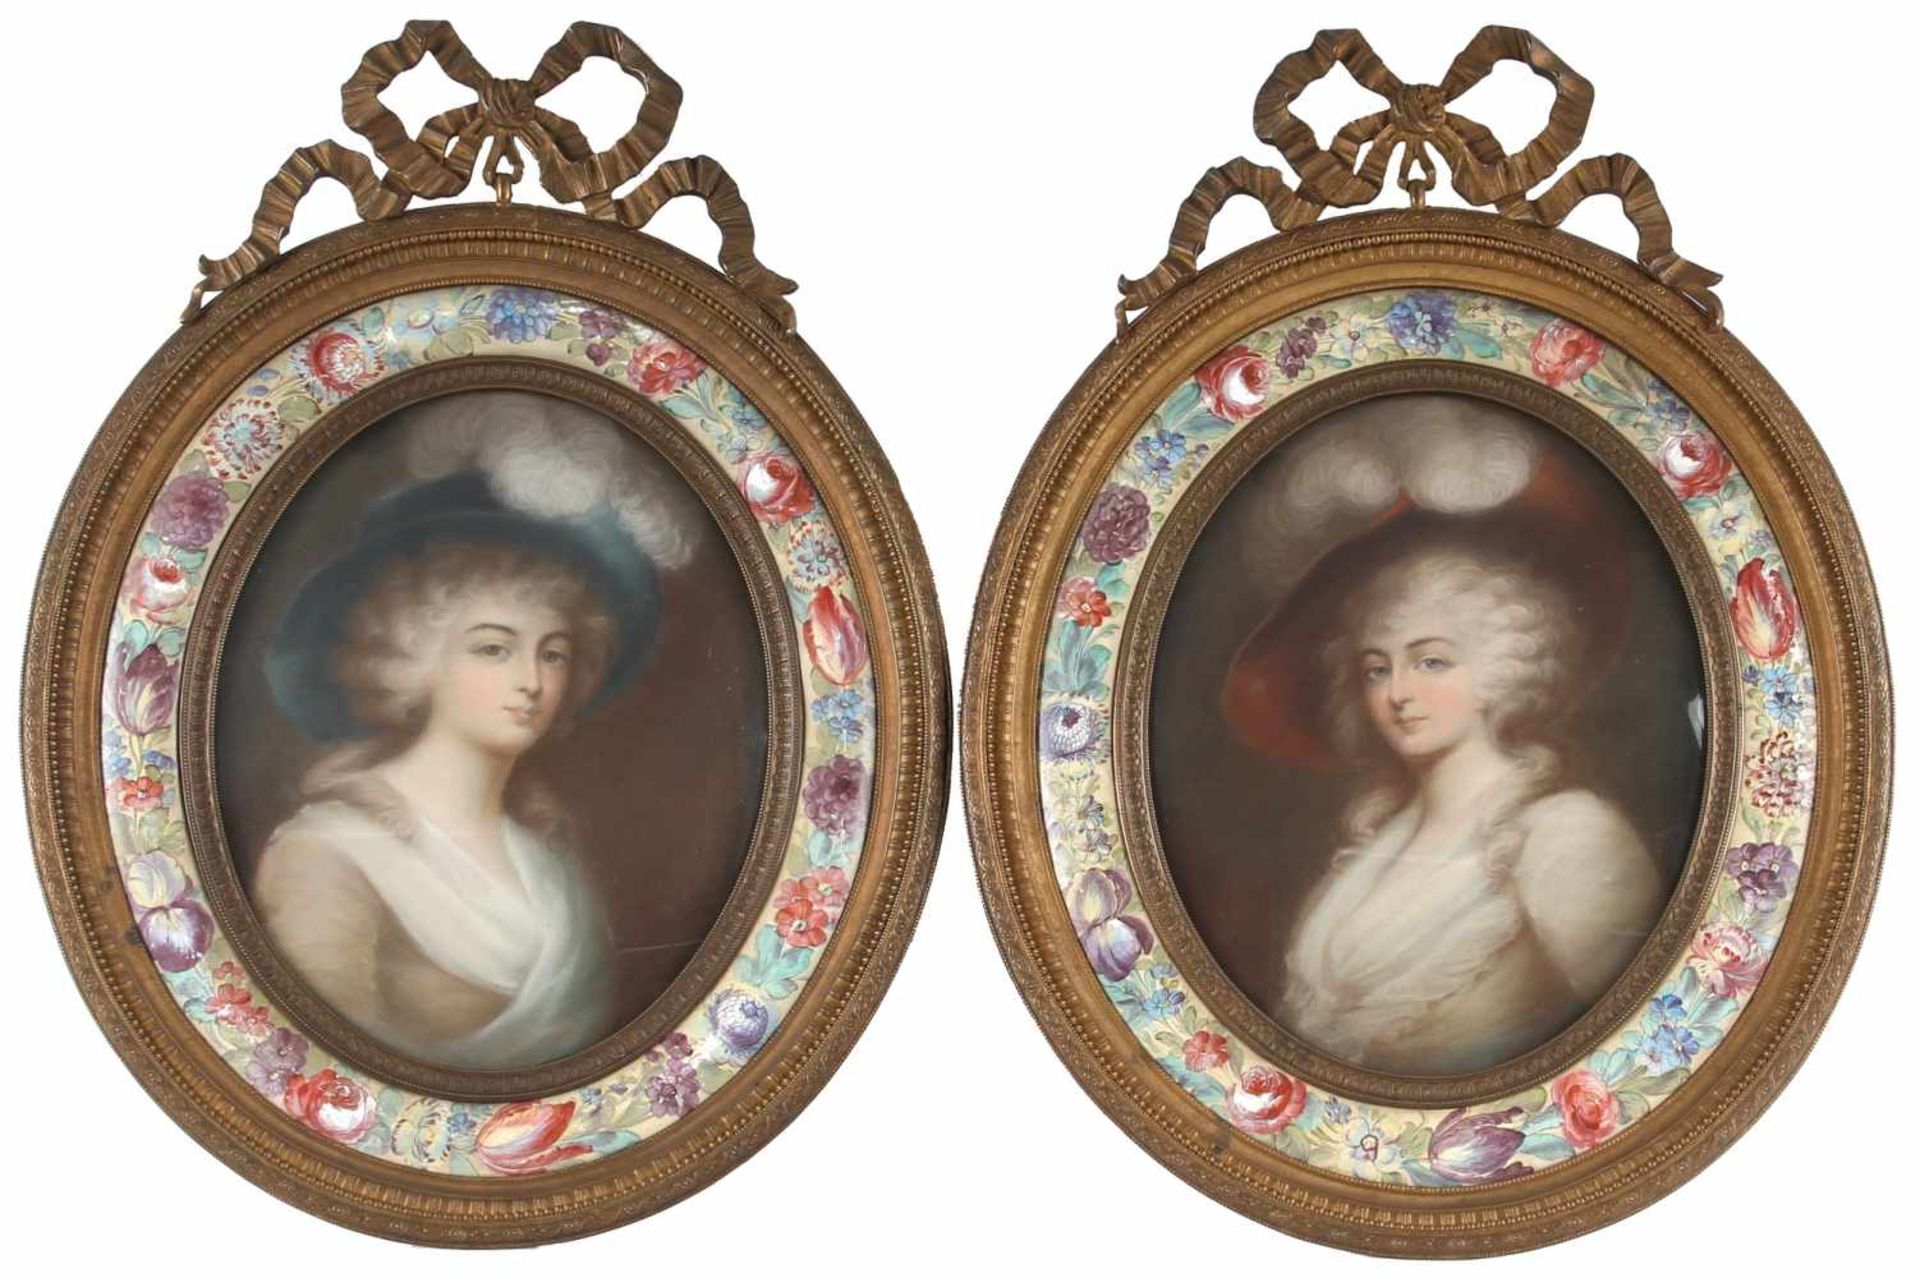 Zwei Portraits von adeligen Damen um 1880, Marlborough und Rosberg, pair of portrait paintings